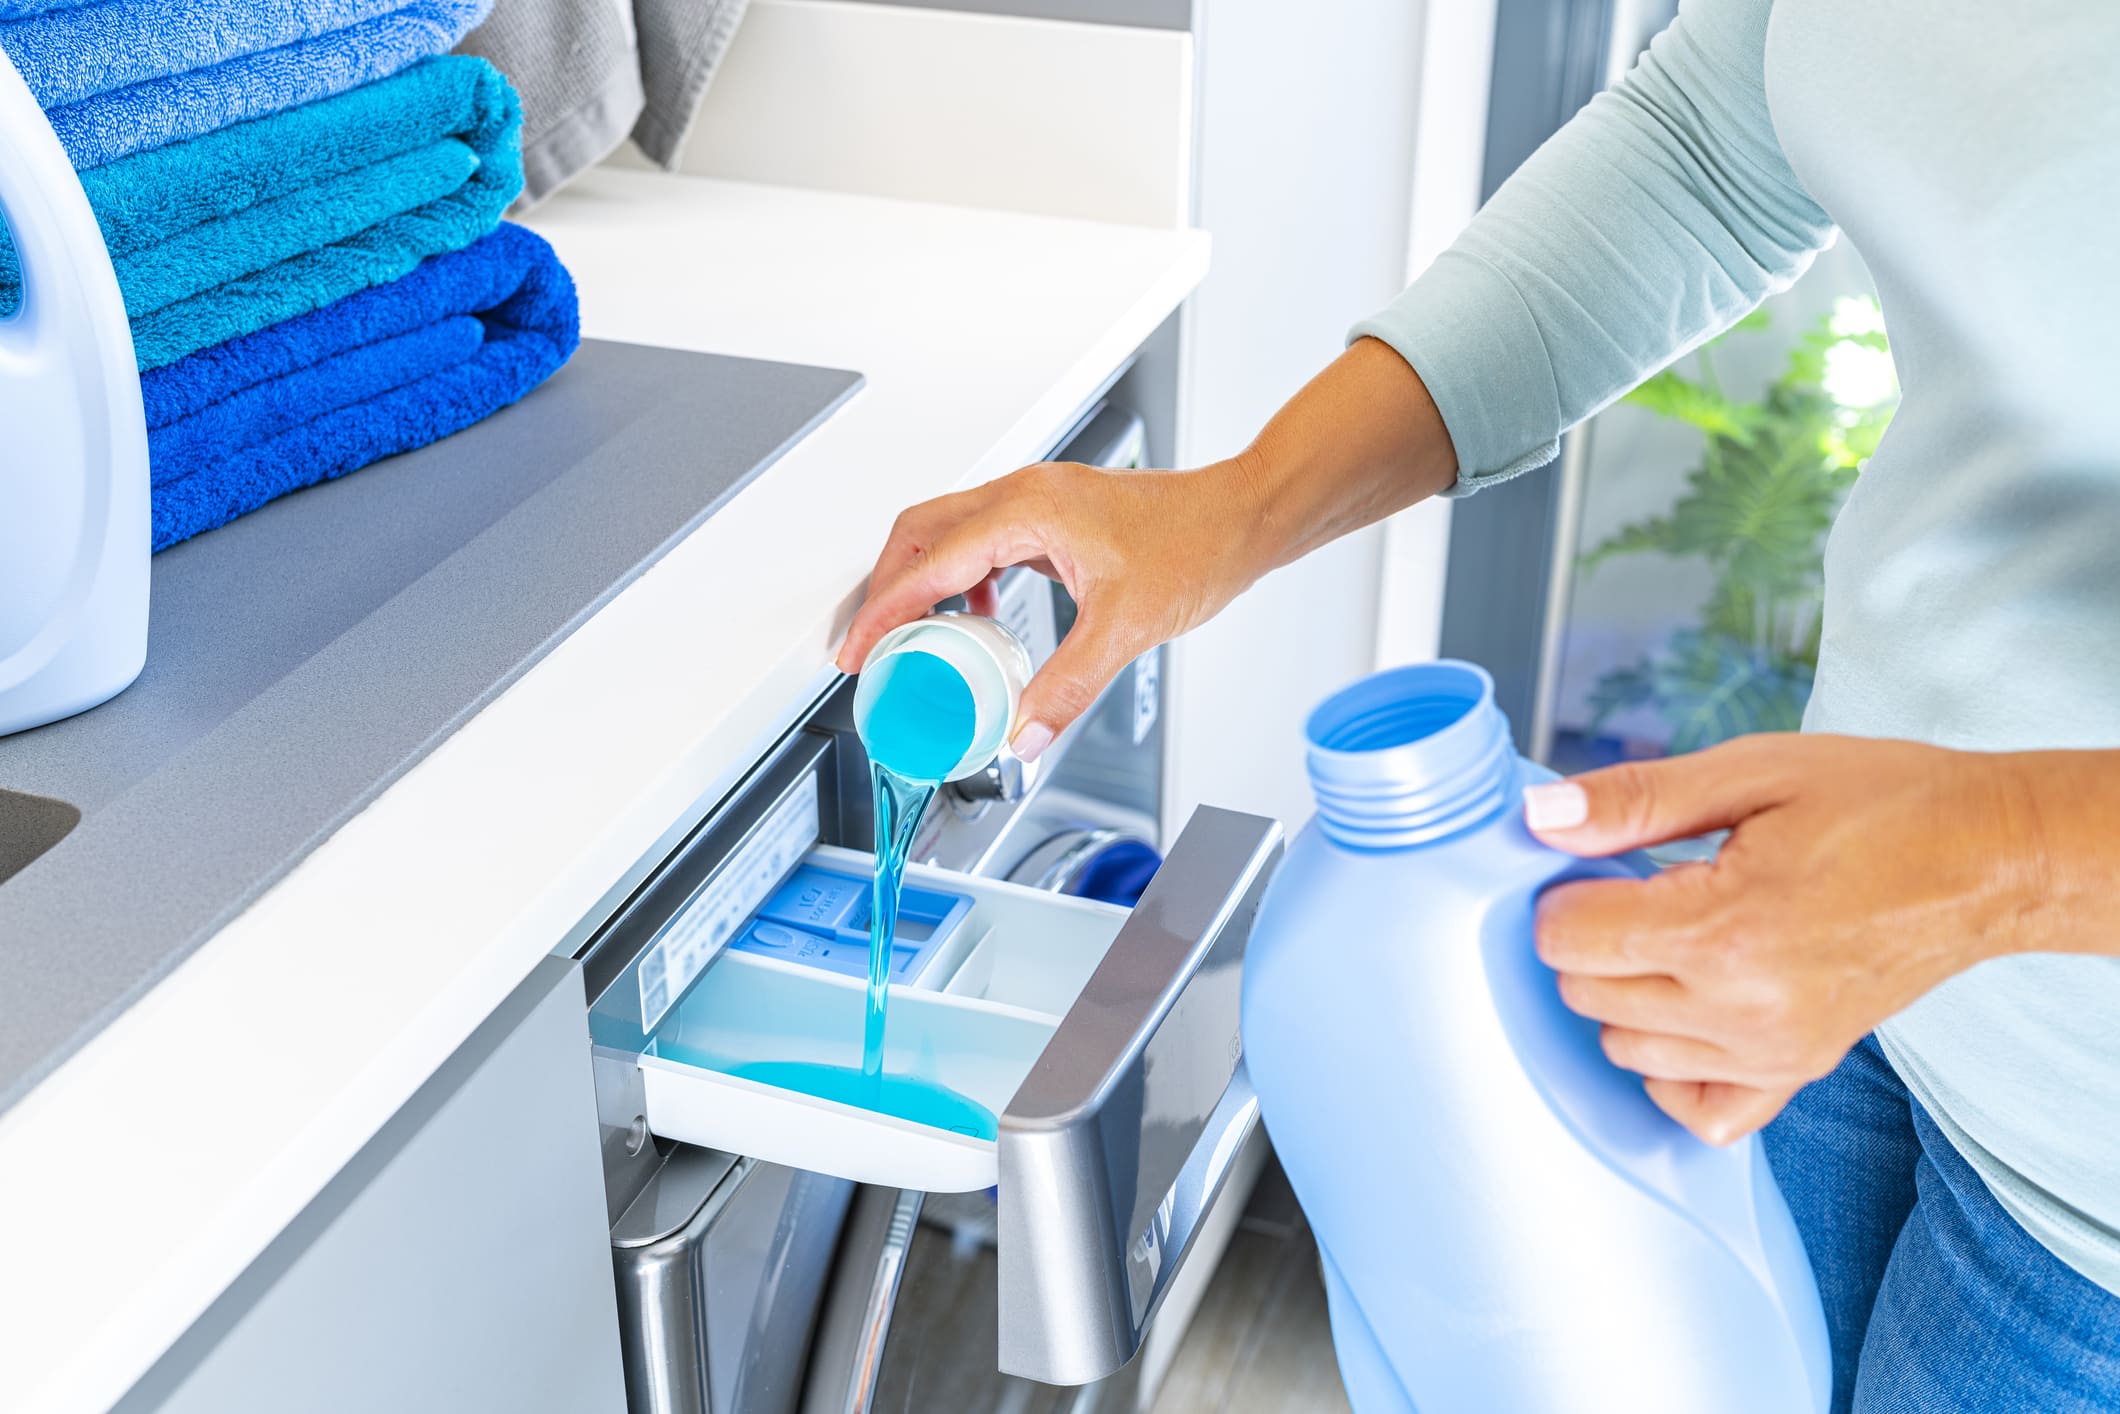 Los consejos de la OCU para limpiar la lavadora y evitar mal olor